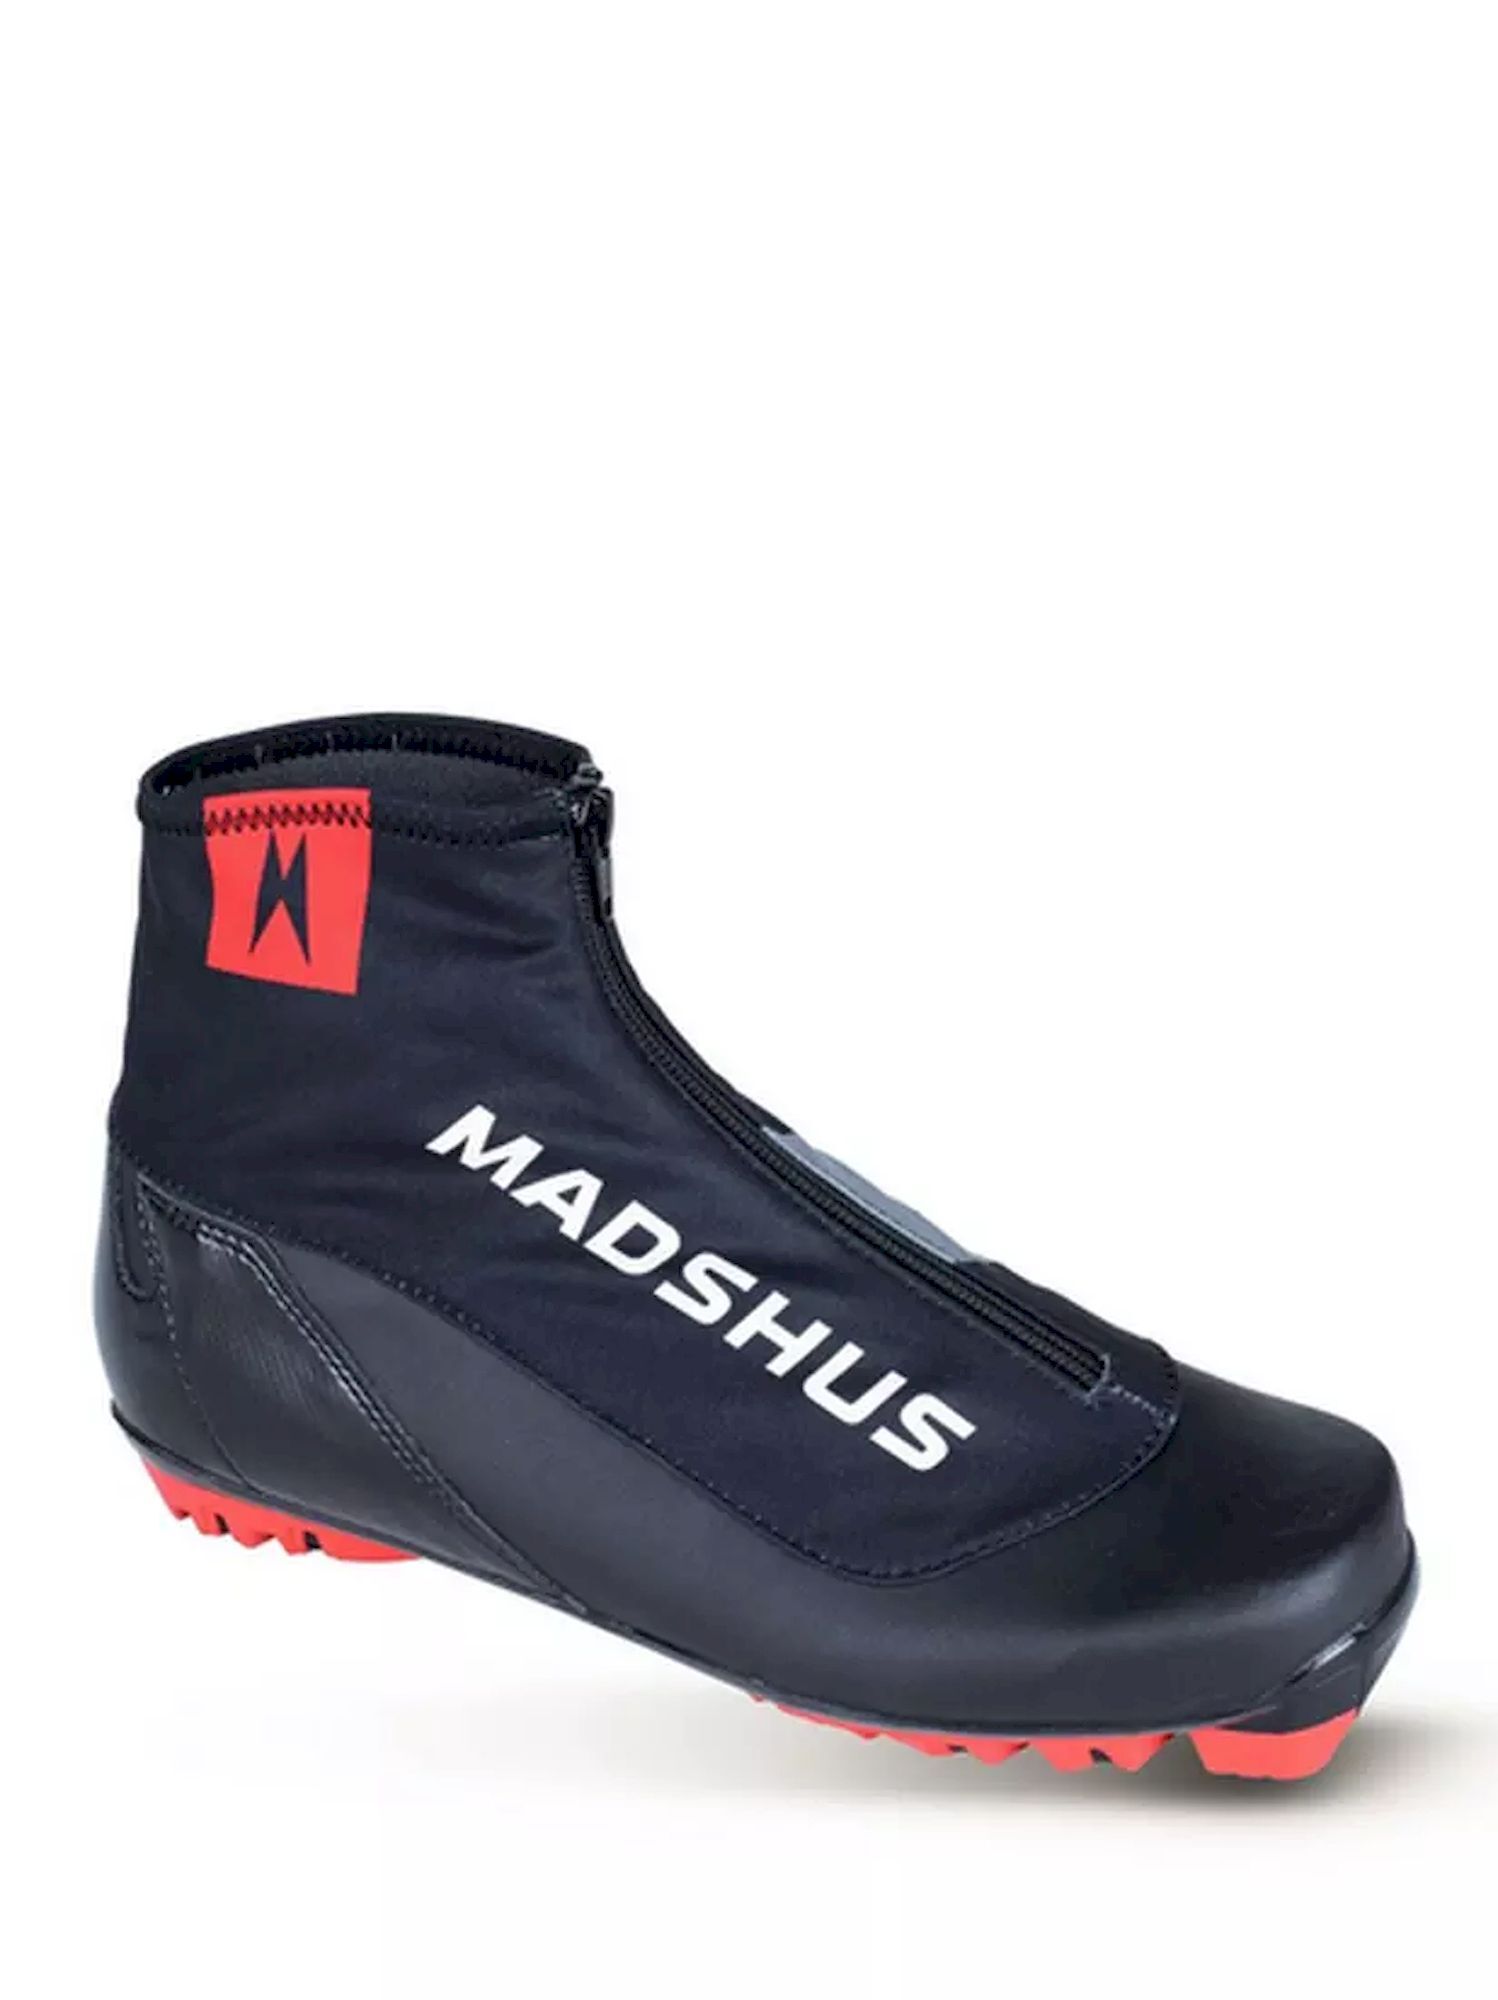 Madshus Endurace Classic - Botas de esquí de fondo | Hardloop